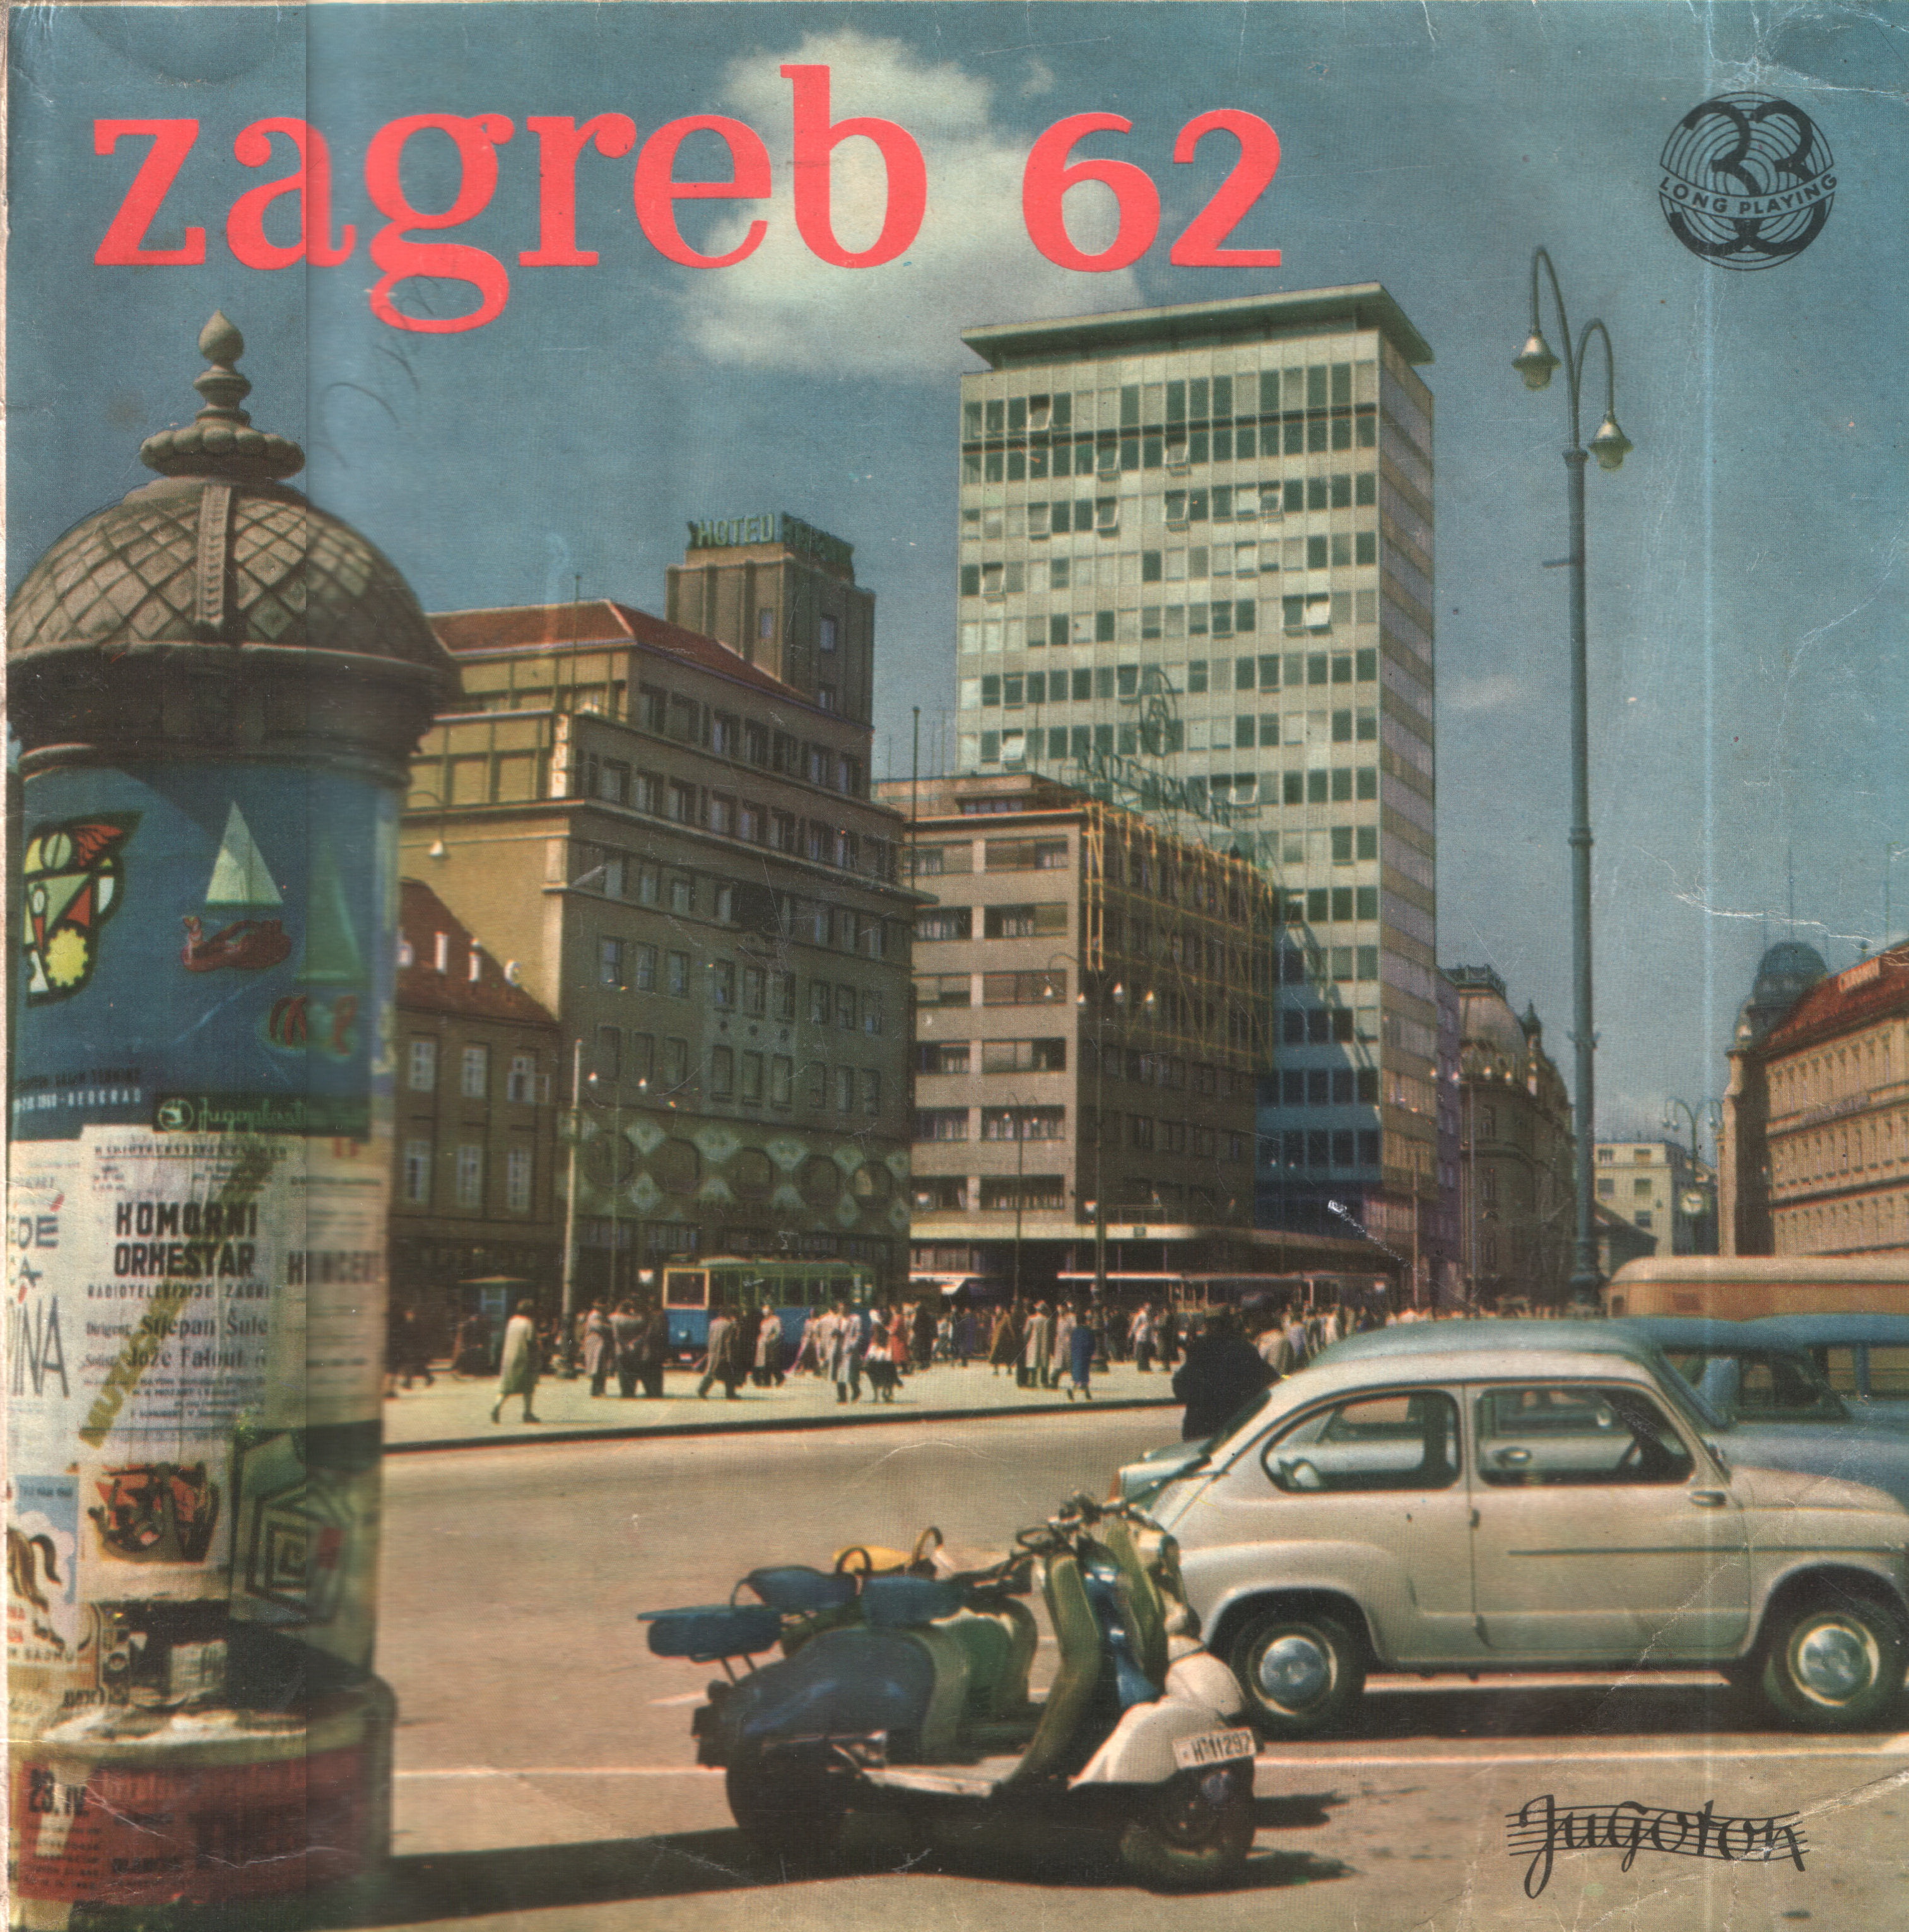 VA 1962 Zagreb 62 Ploca 1 a